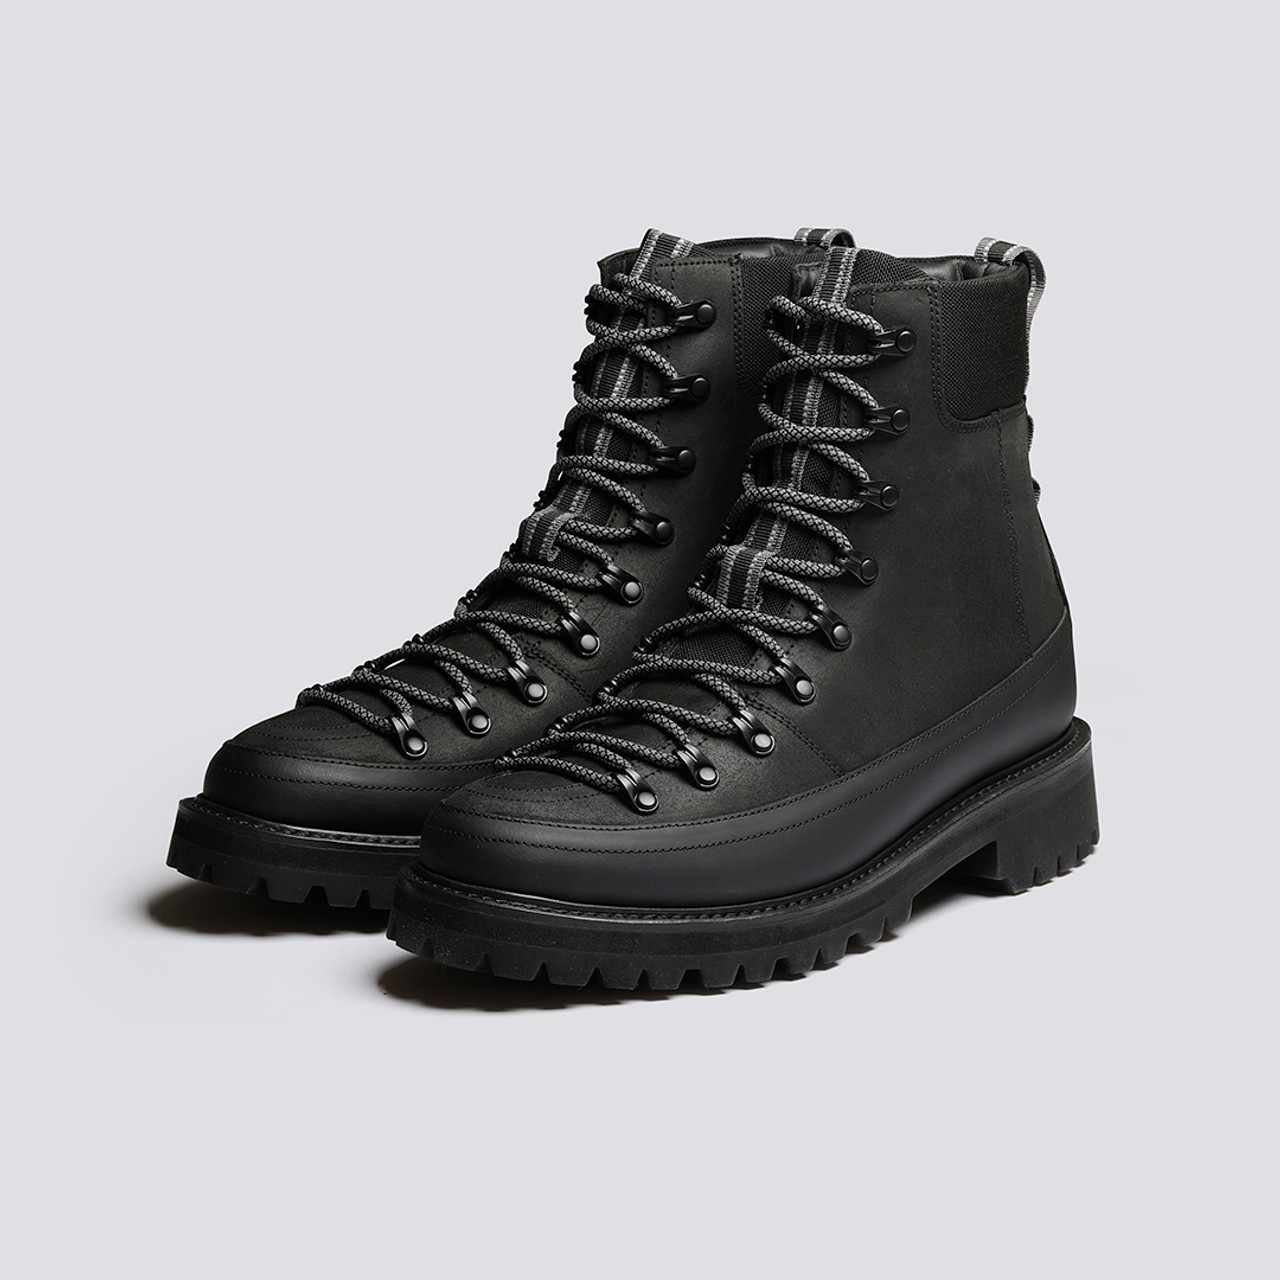 Brady Tech | Mens Hiker Boots in Black on Vibram Sole | Grenson